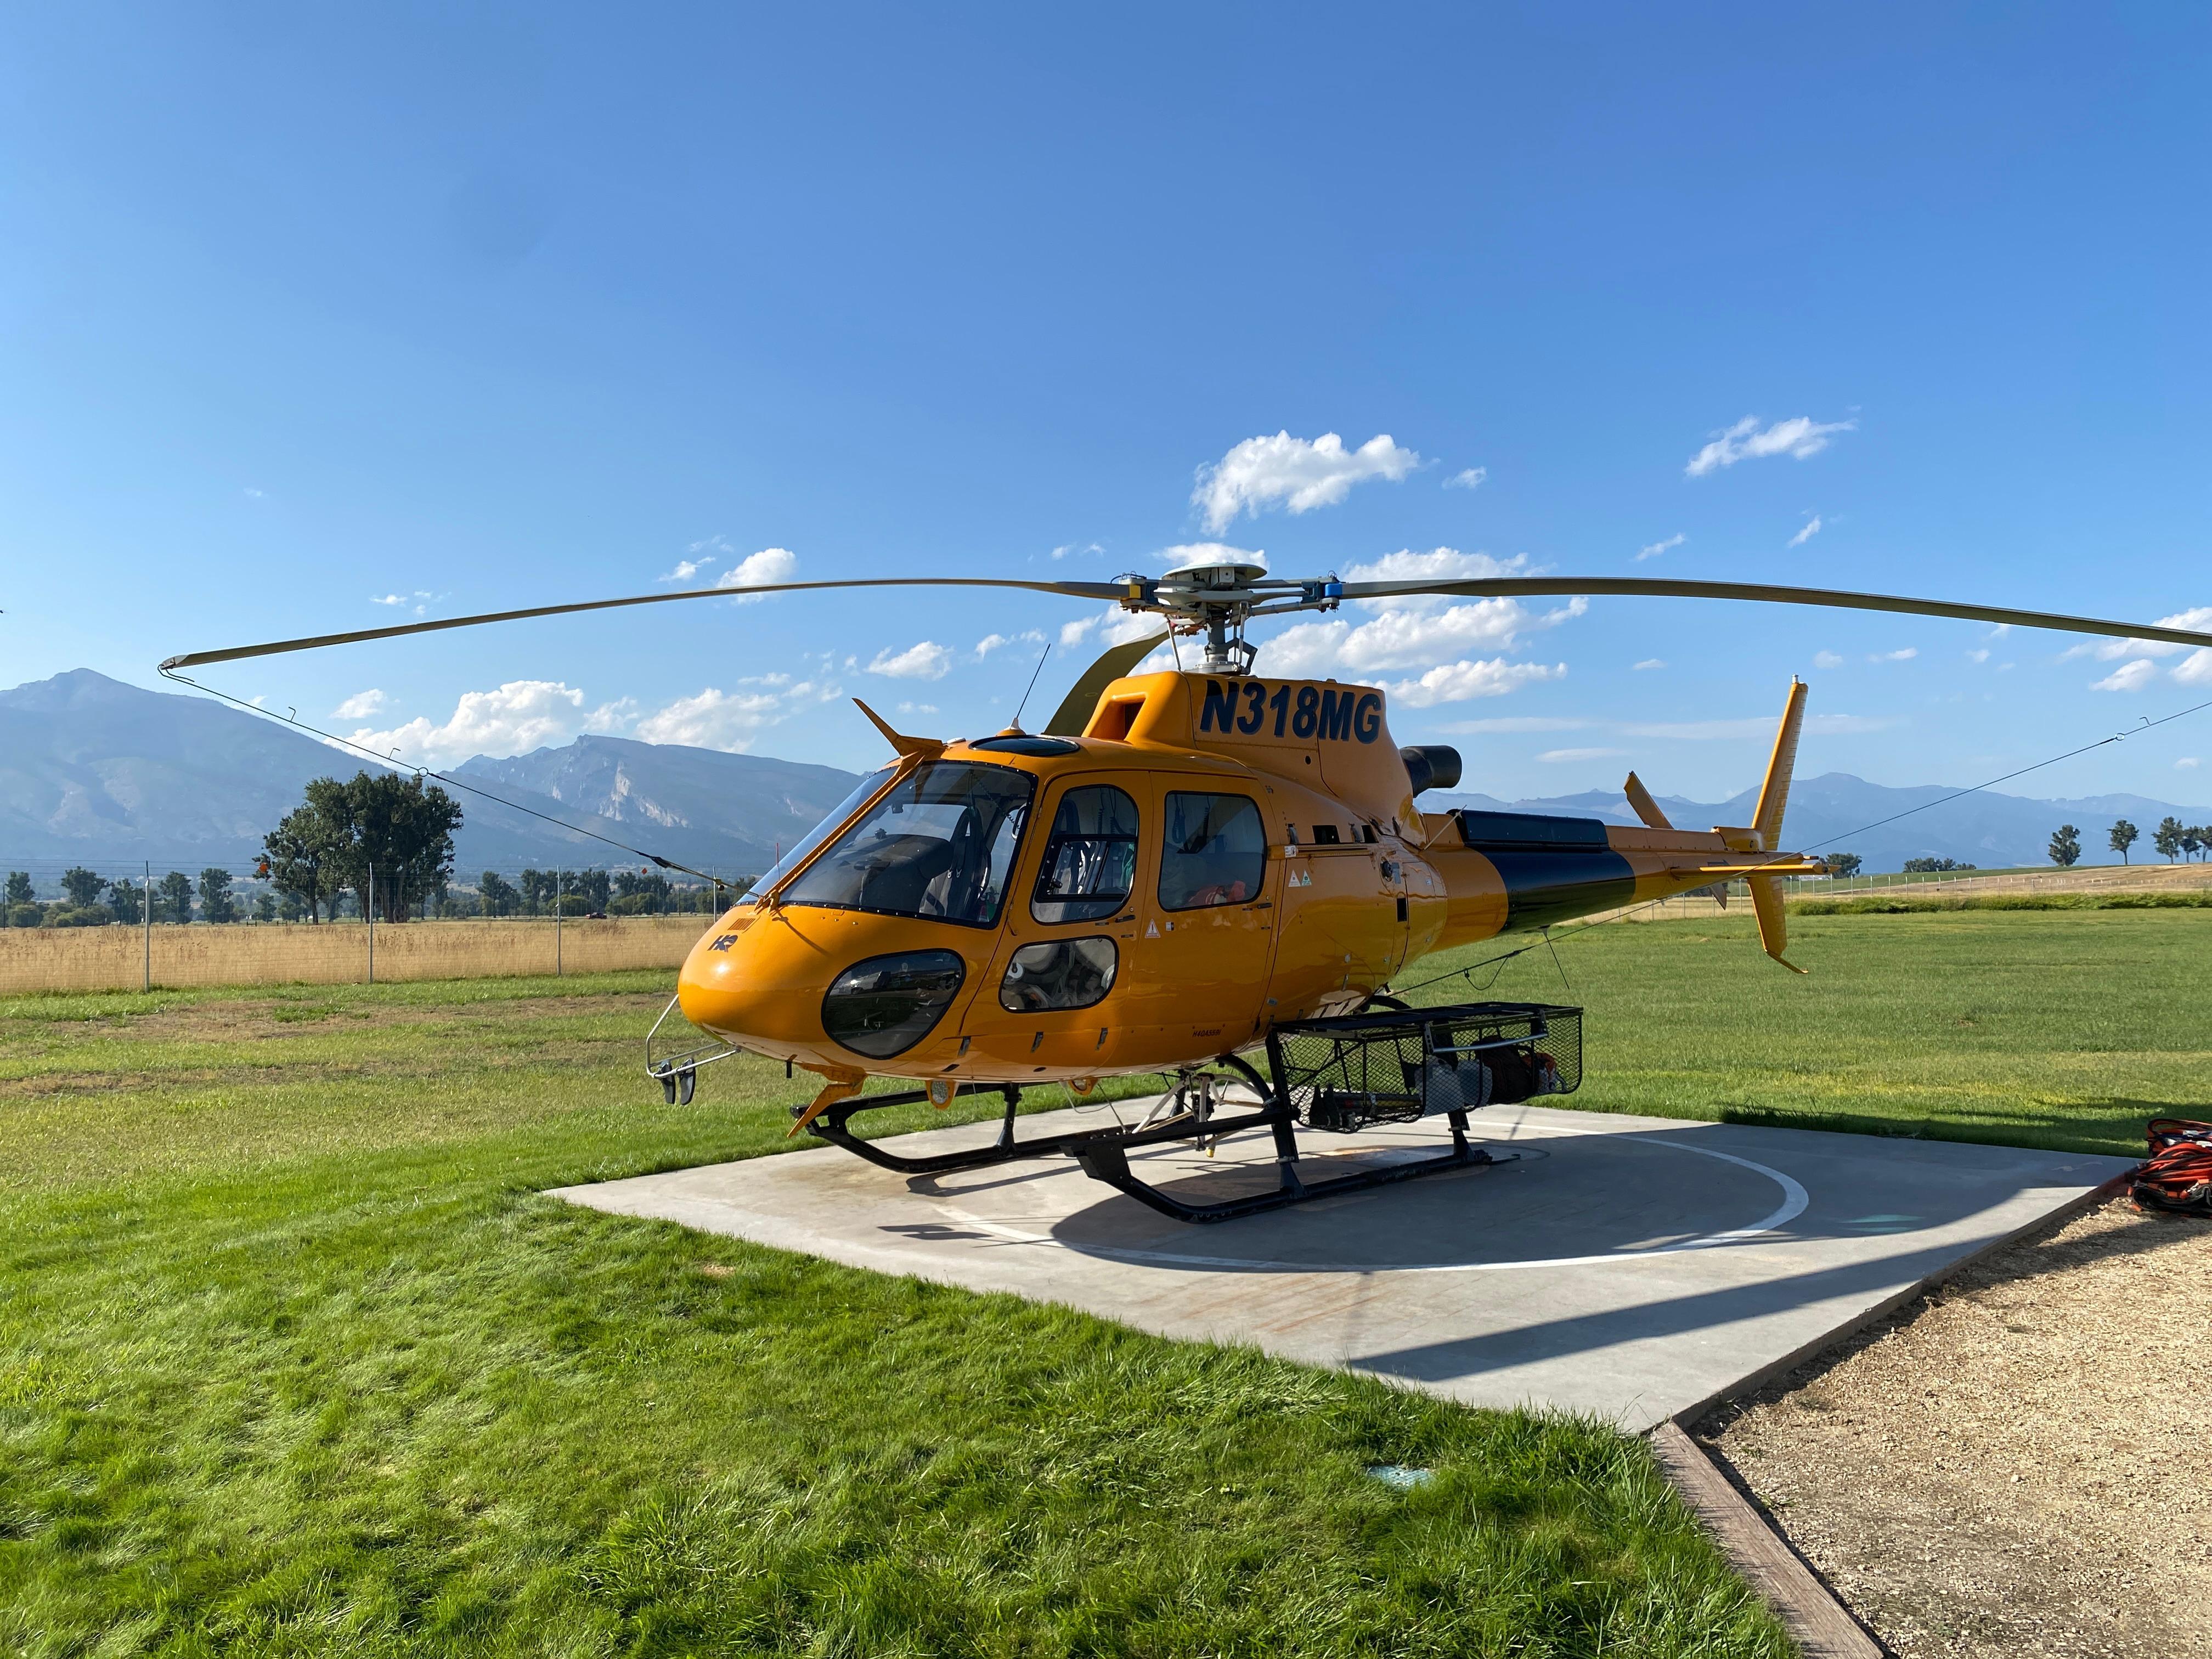 Blodgett Lake Fire Aviation Asset